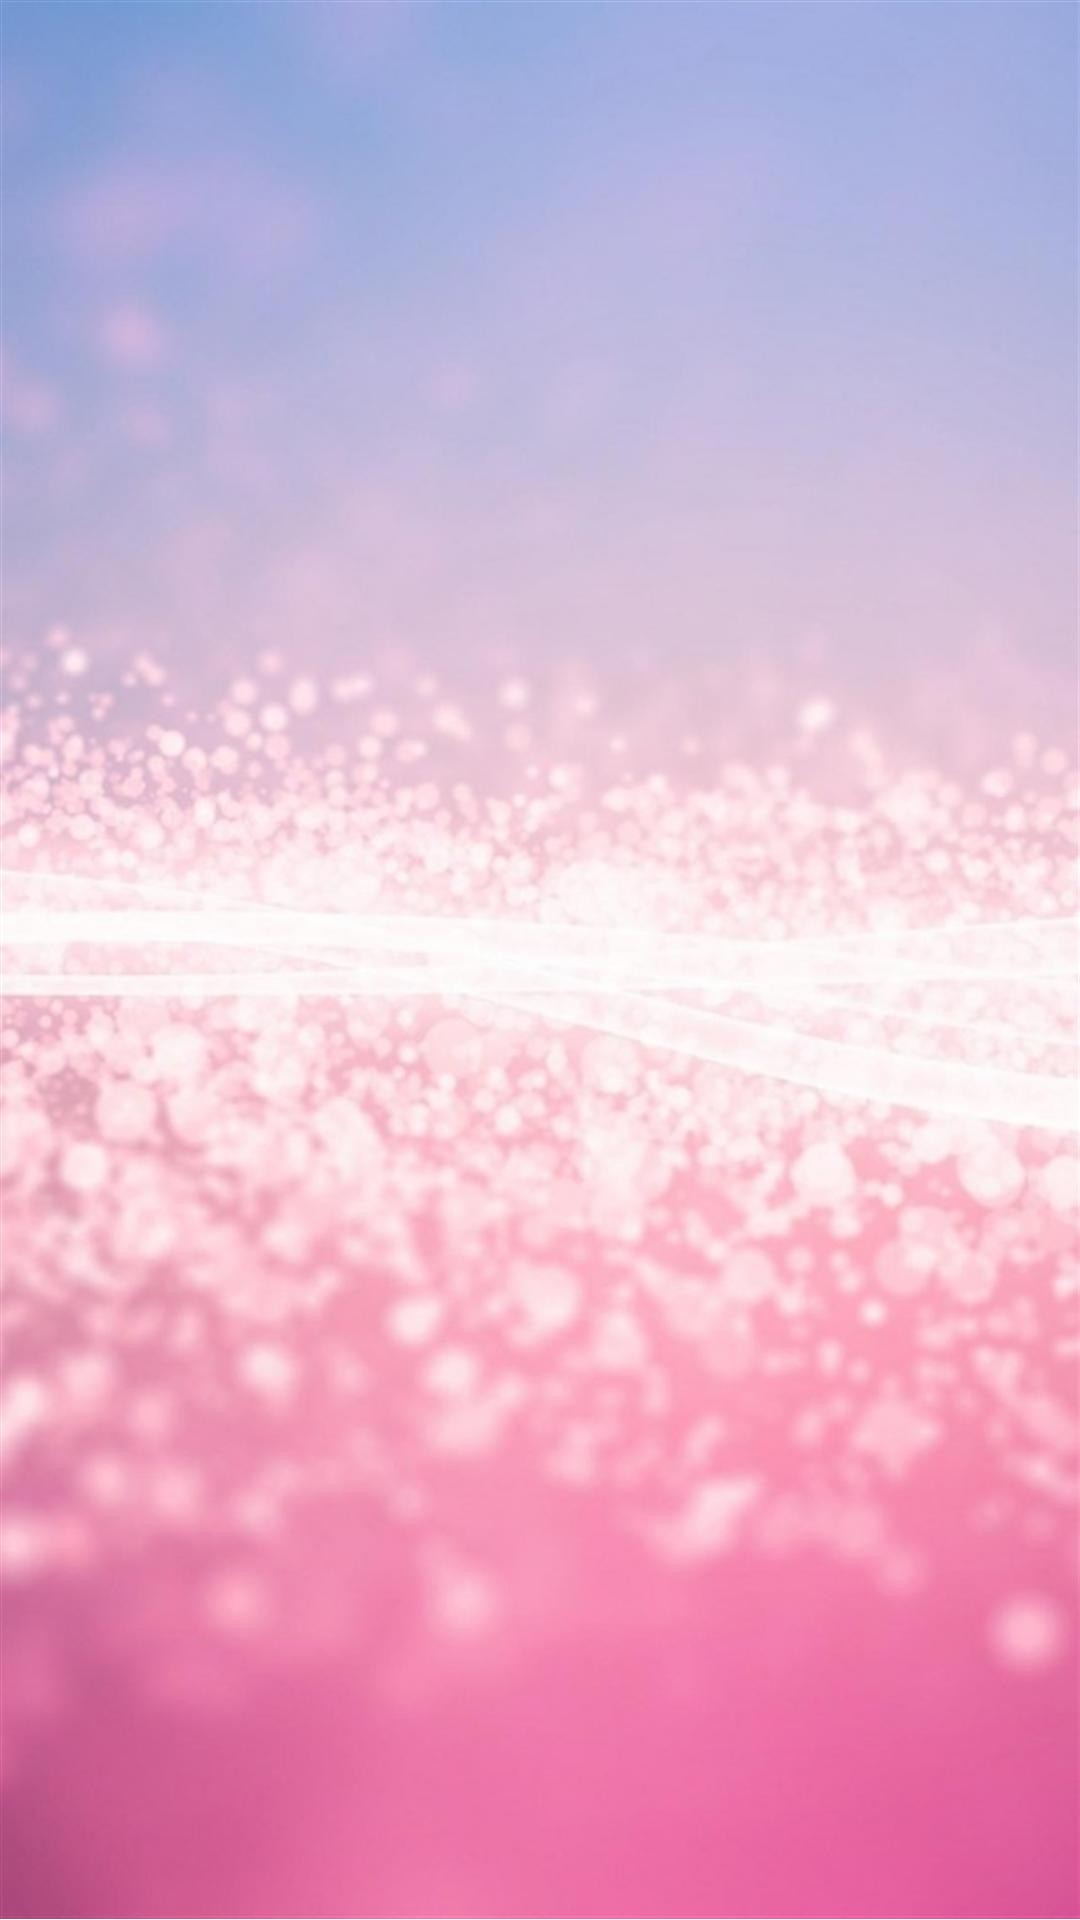 50 素晴らしいiphone 壁紙 ピンク キラキラ すべての美しい花の画像